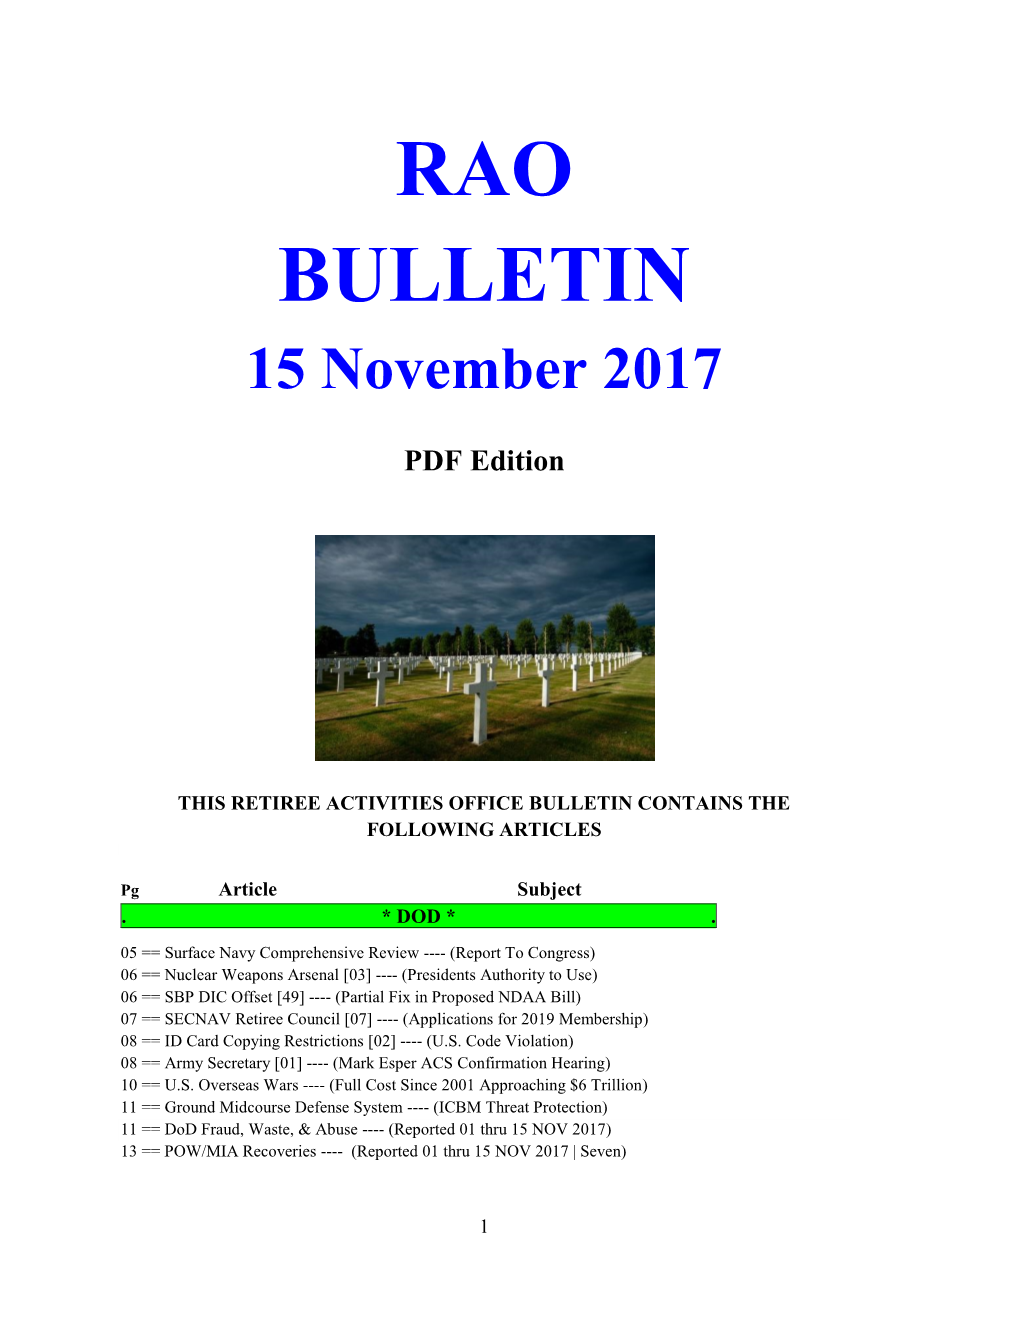 RAO BULLETIN 15 November 2017